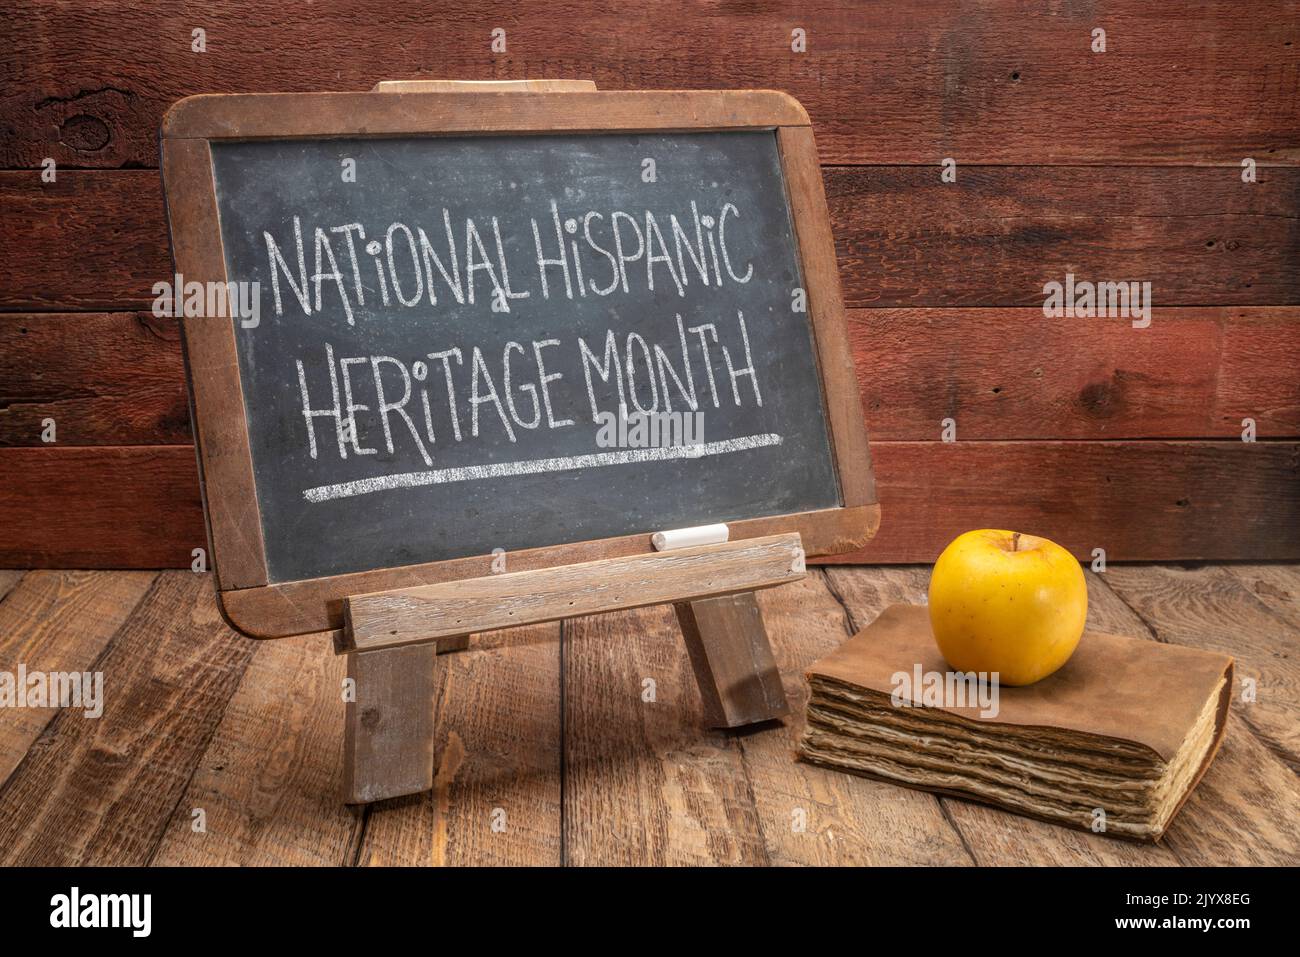 National Ispan Heritage Month (settembre 15 - ottobre 15) - testo in gesso bianco su una lavagna in ardesia in una classe retrò, promemoria di evento culturale Foto Stock